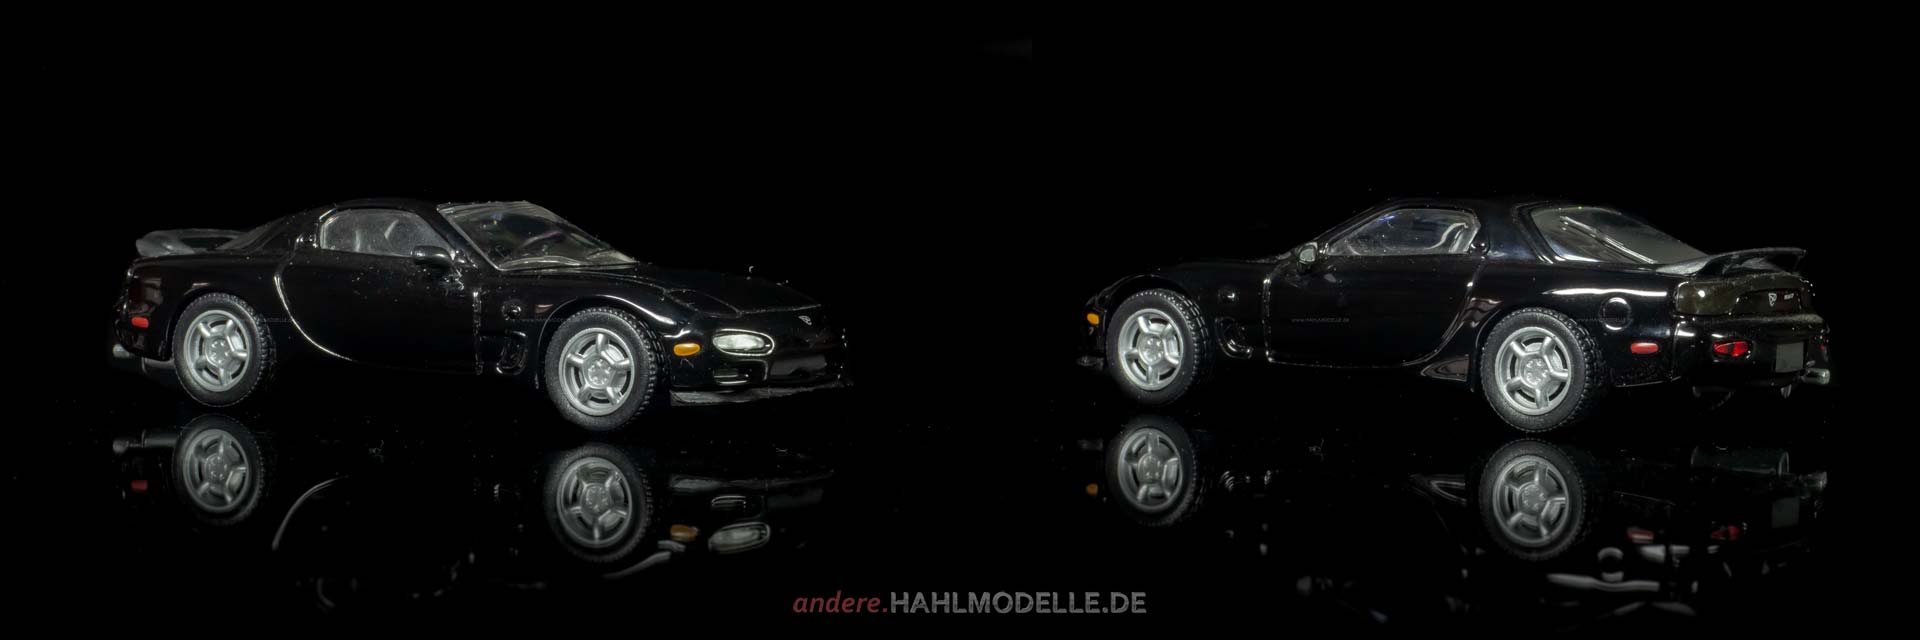 Mazda RX-7 (FD3S) | Coupé | Ixo (Del Prado Car Collection) | 1:43 | www.andere.hahlmodelle.de